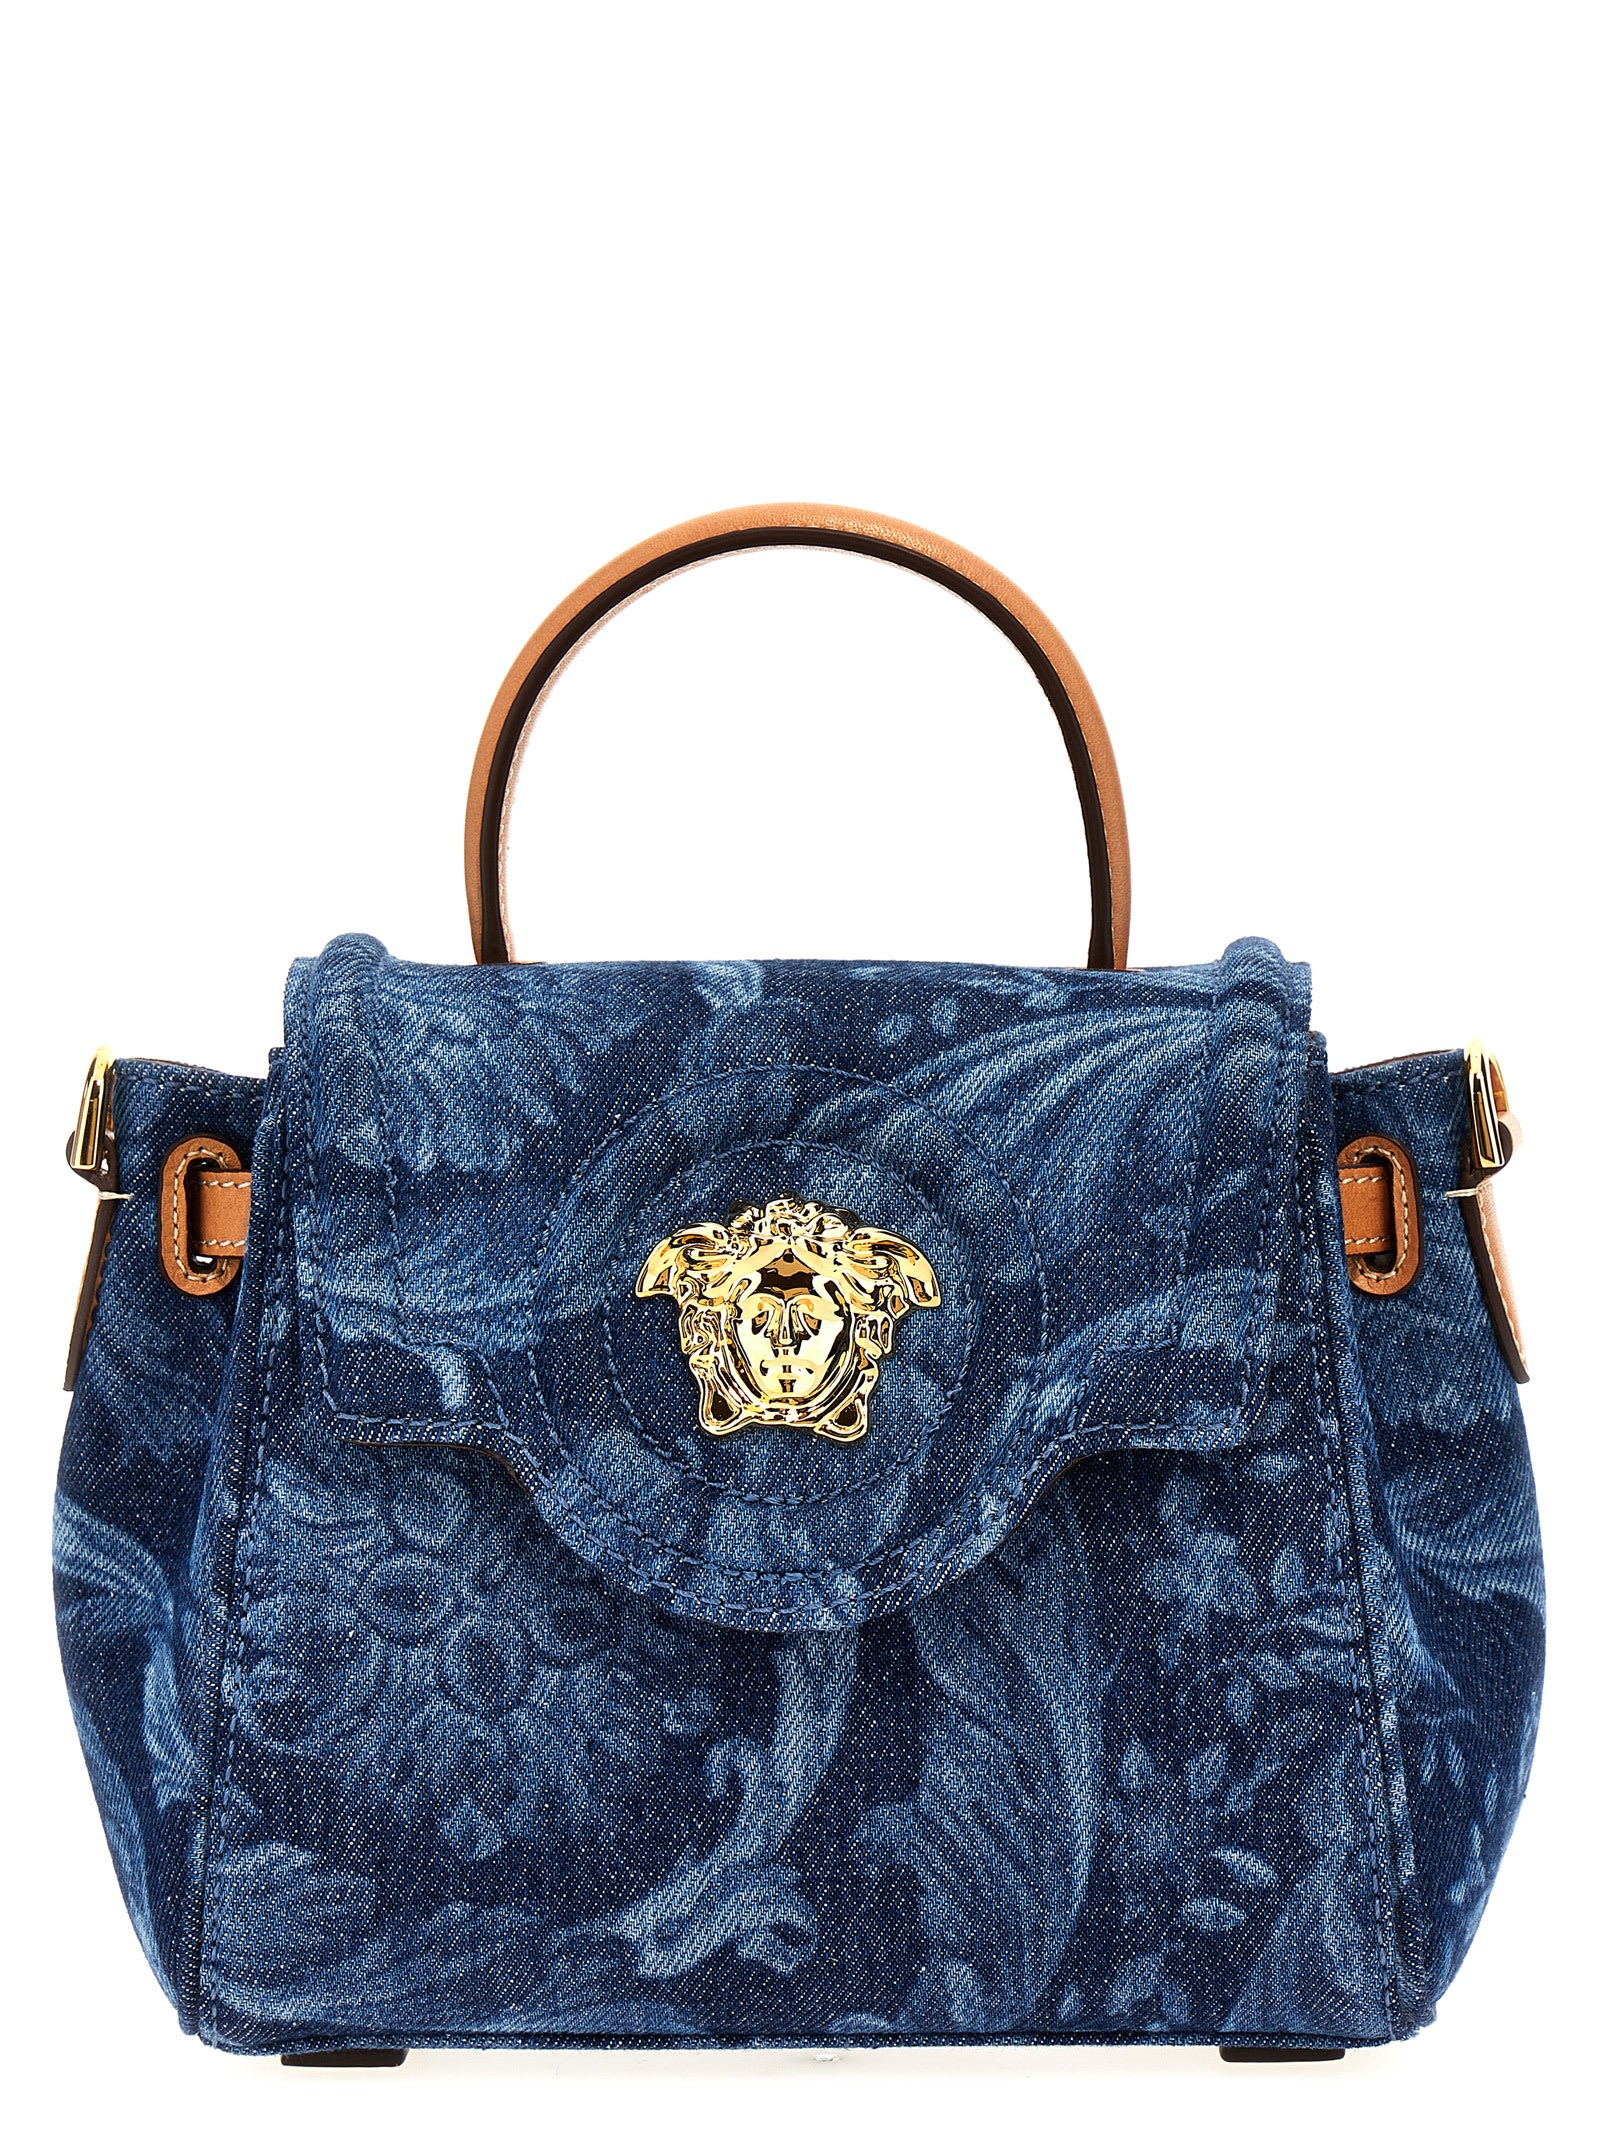 Versace Barocco Small Handbag In Blue